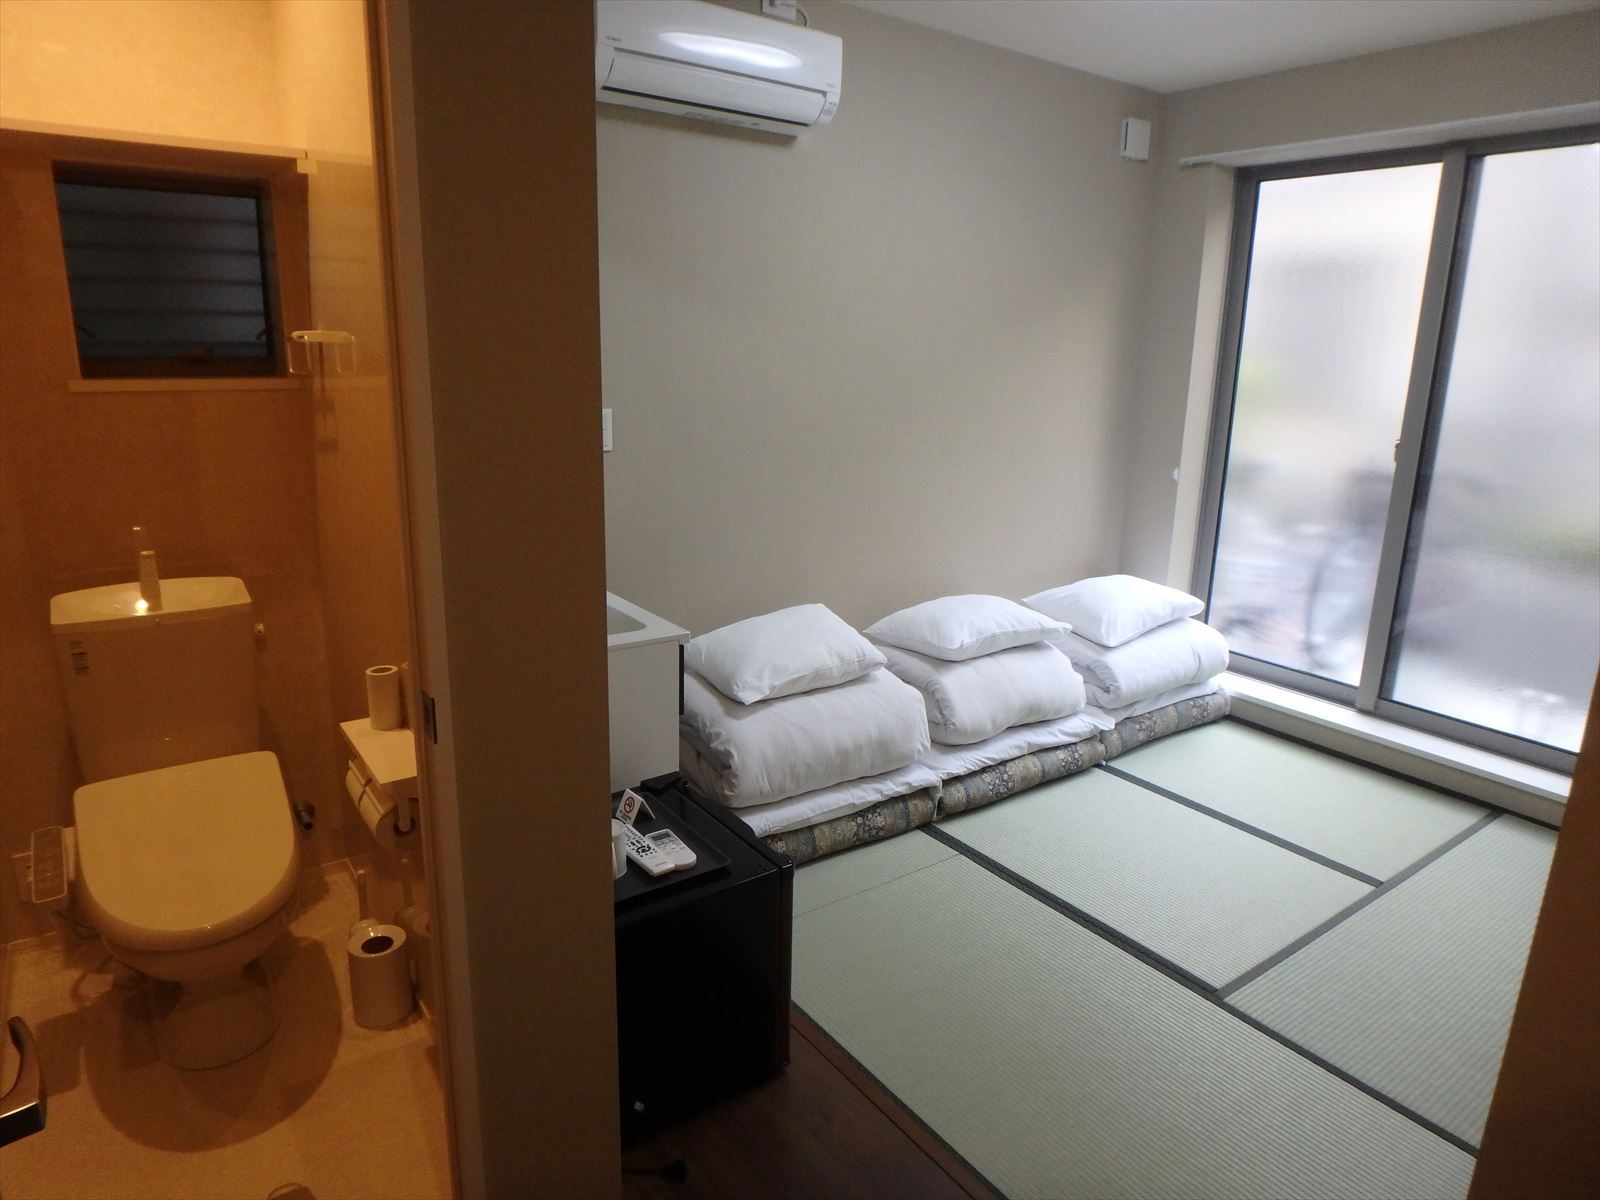 北部浅草で泊まる簡素な素泊まりの宿泊プラン